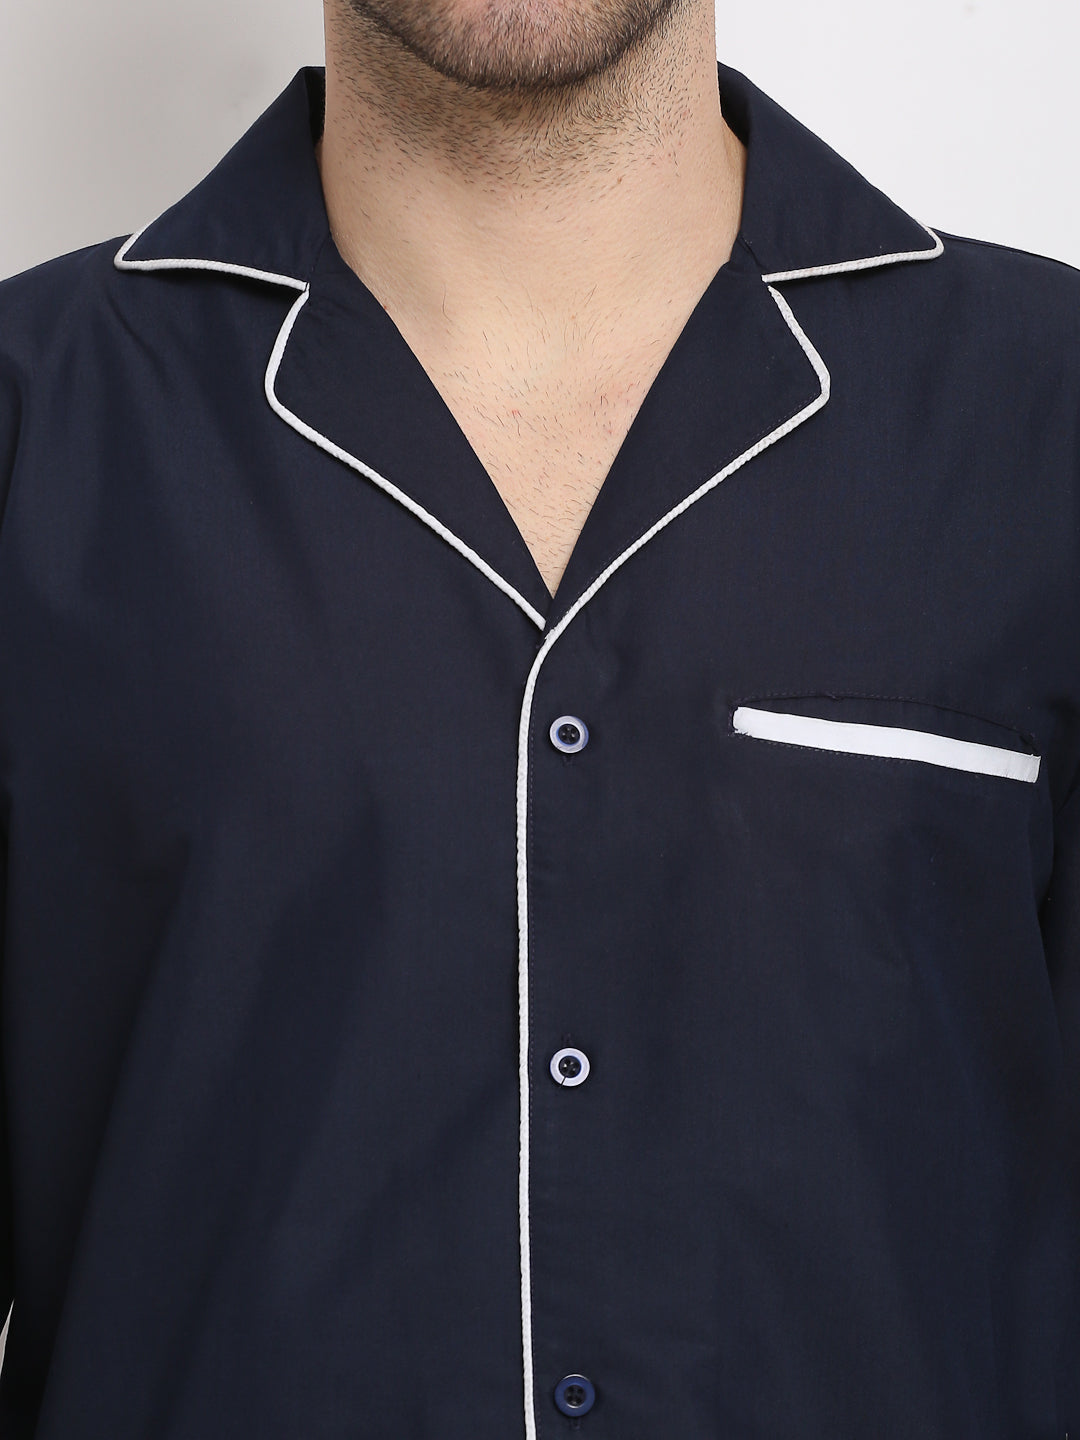 Jainish Men's Navy Cotton Solid Night Suits ( GNS 003Navy ) - Distacart